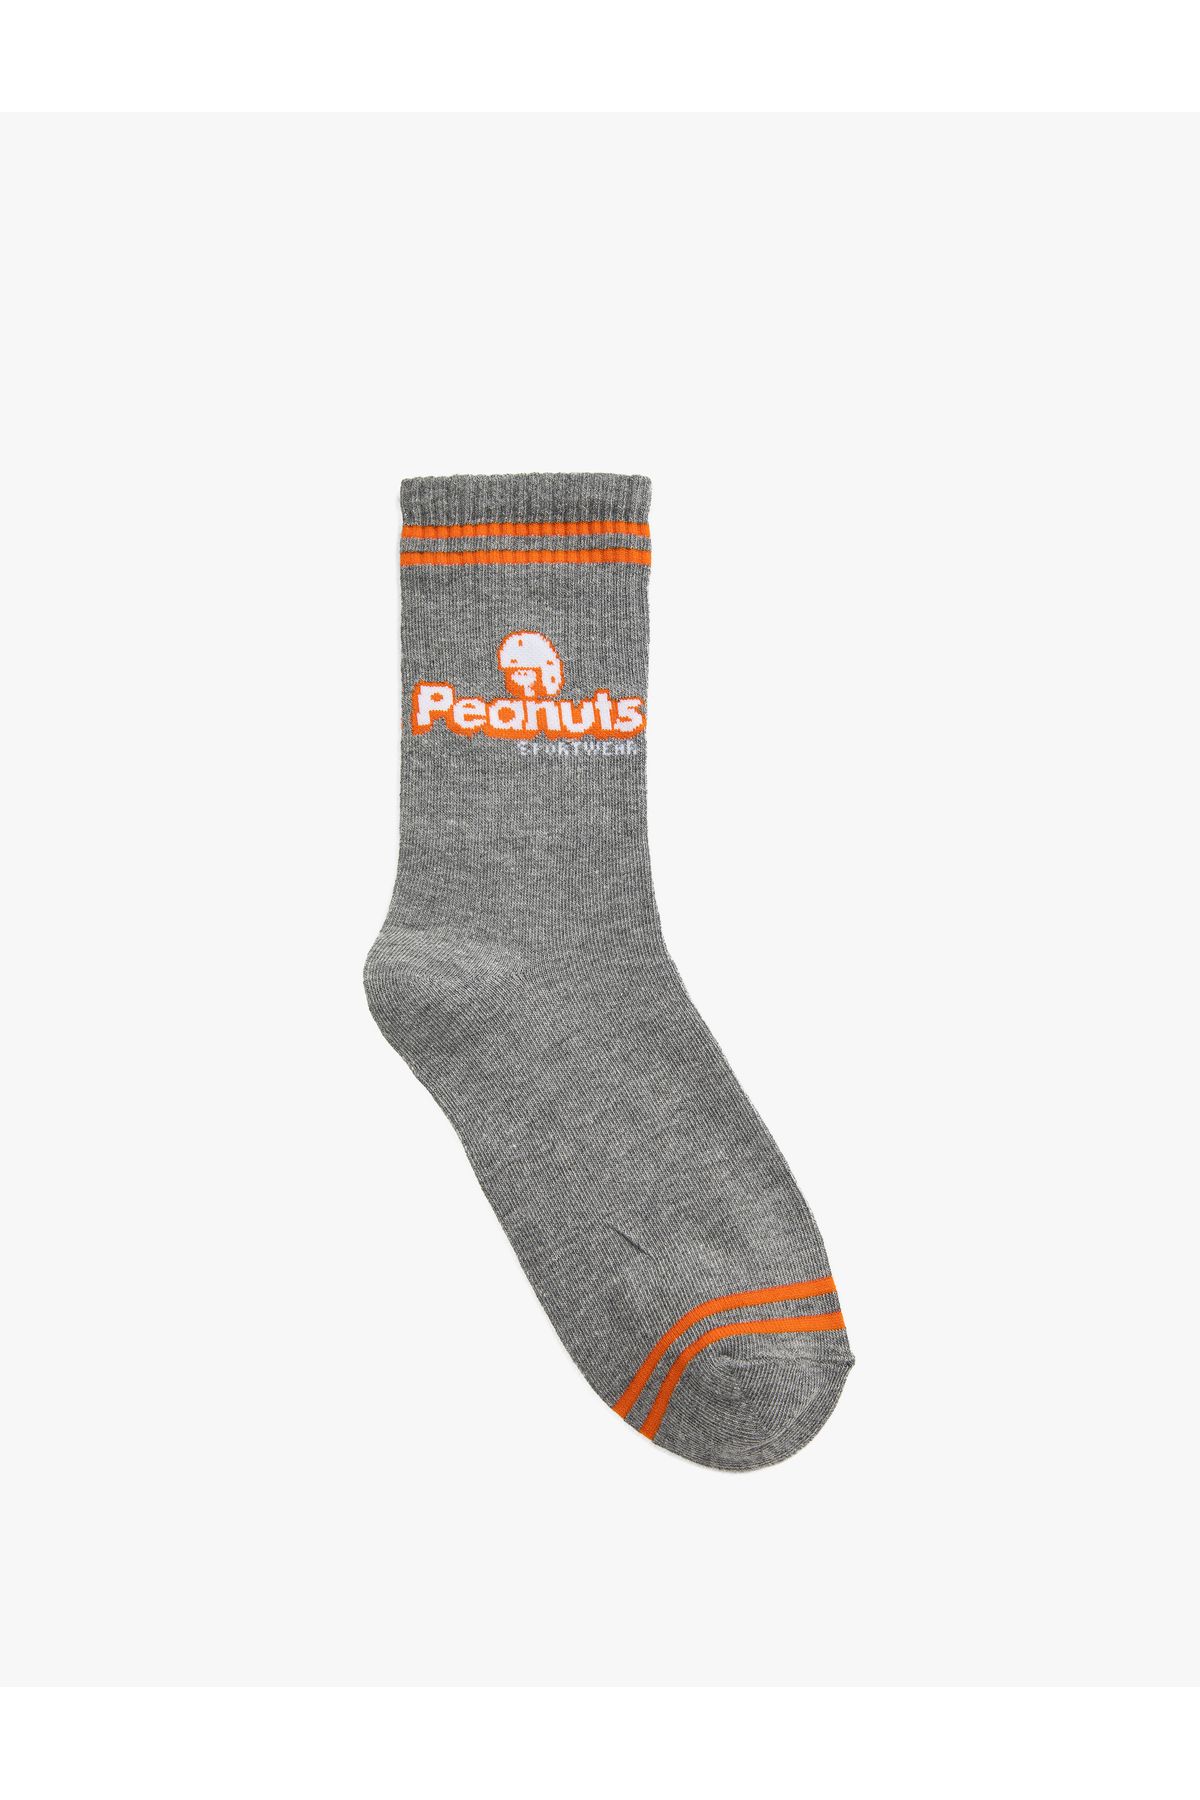 Koton Peanuts Soket Çorap Lisanslı Baskılı